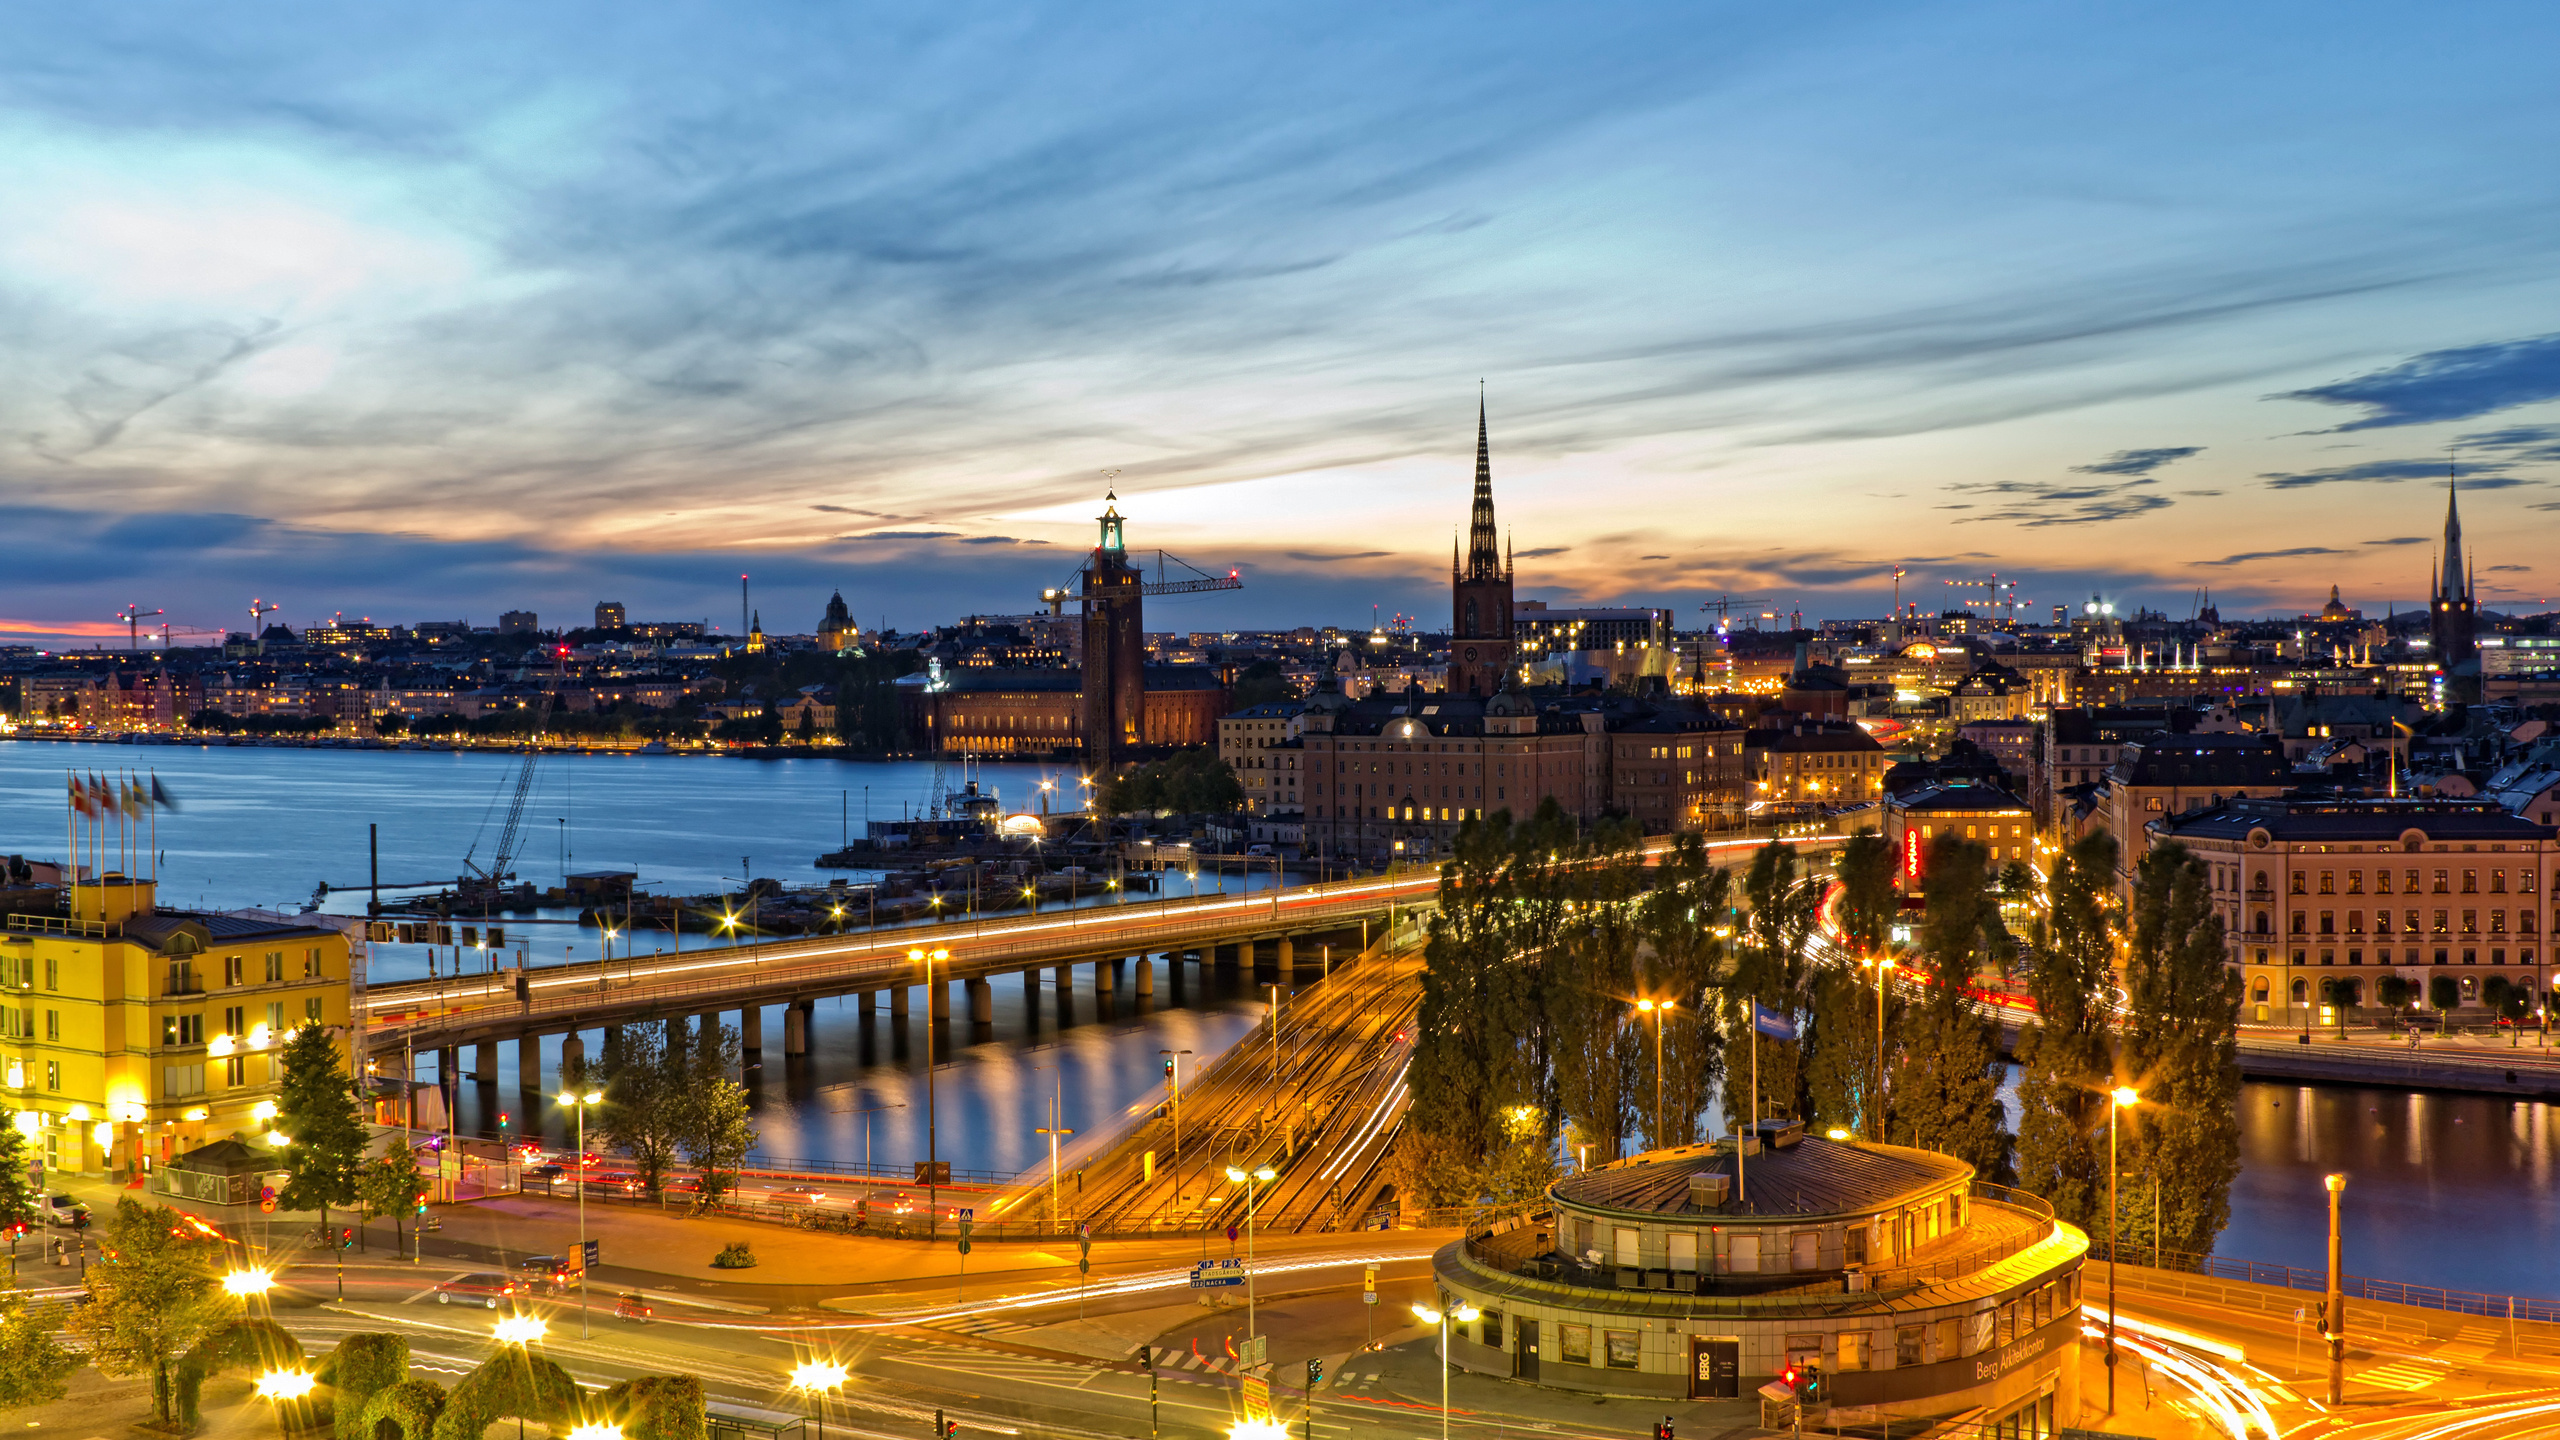 斯德哥尔摩, 城市景观, 城市, 里程碑, 晚上 壁纸 2560x1440 允许